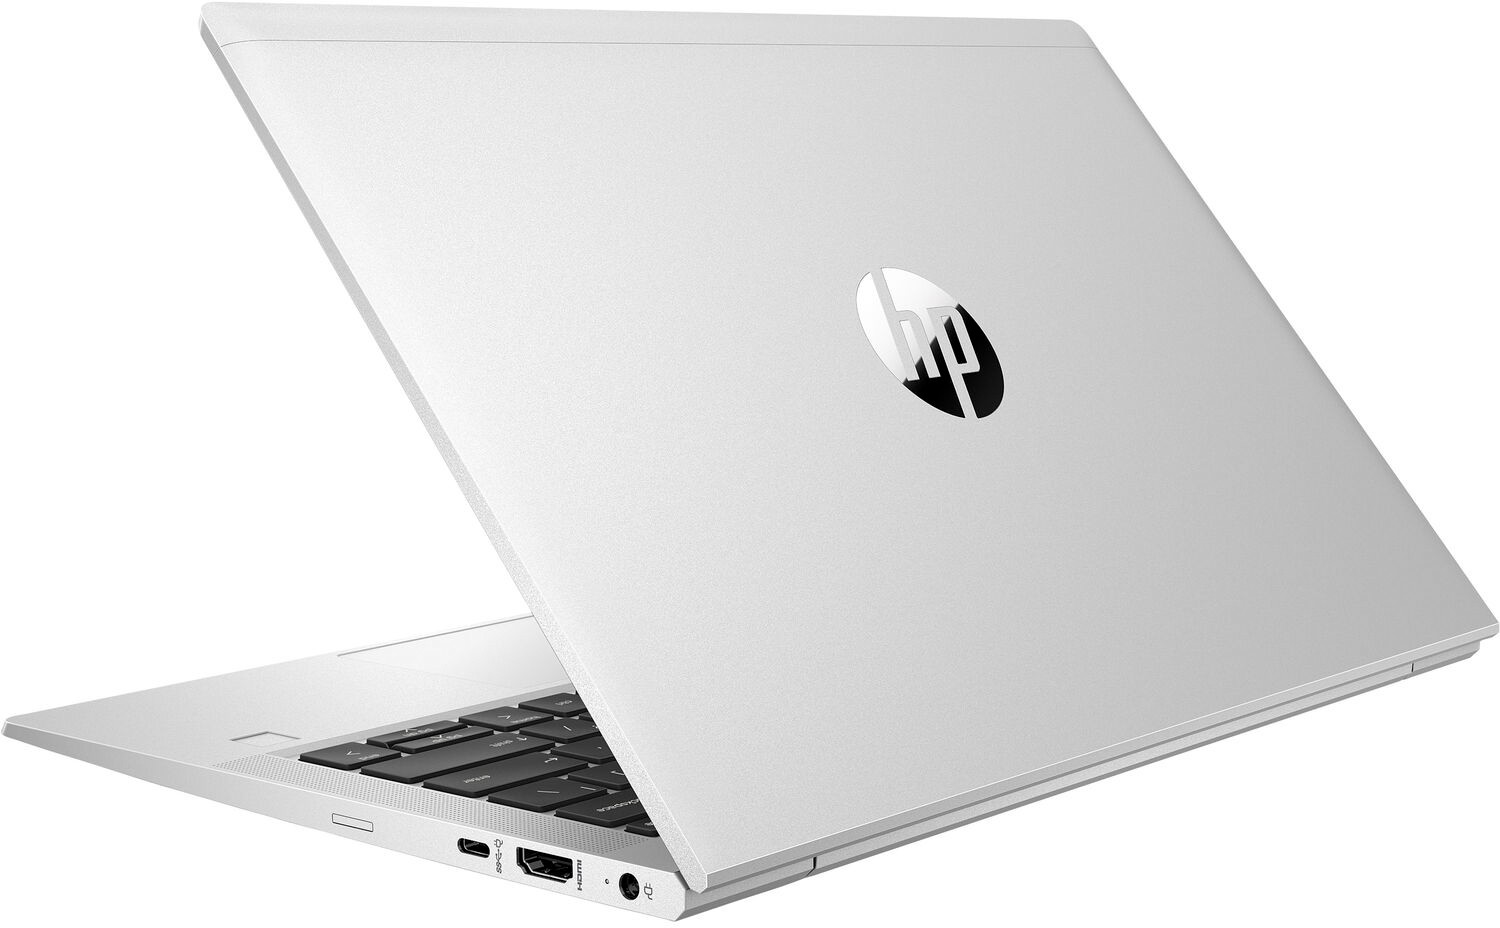 Ноутбук HP ProBook 635 Aero G7 AMD Ryzen 5 4500U 2.3GHz,13.3" FHD (1920x1080) IPS 400cd IR ALS AG,16Gb DDR4-3200MHz(2),512Gb SSD NVMe,LTE,Al+Mg Case,53Wh LL FC,FPS,Kbd Bl+SR,1.1kg,1yw,Win10Pro-39385